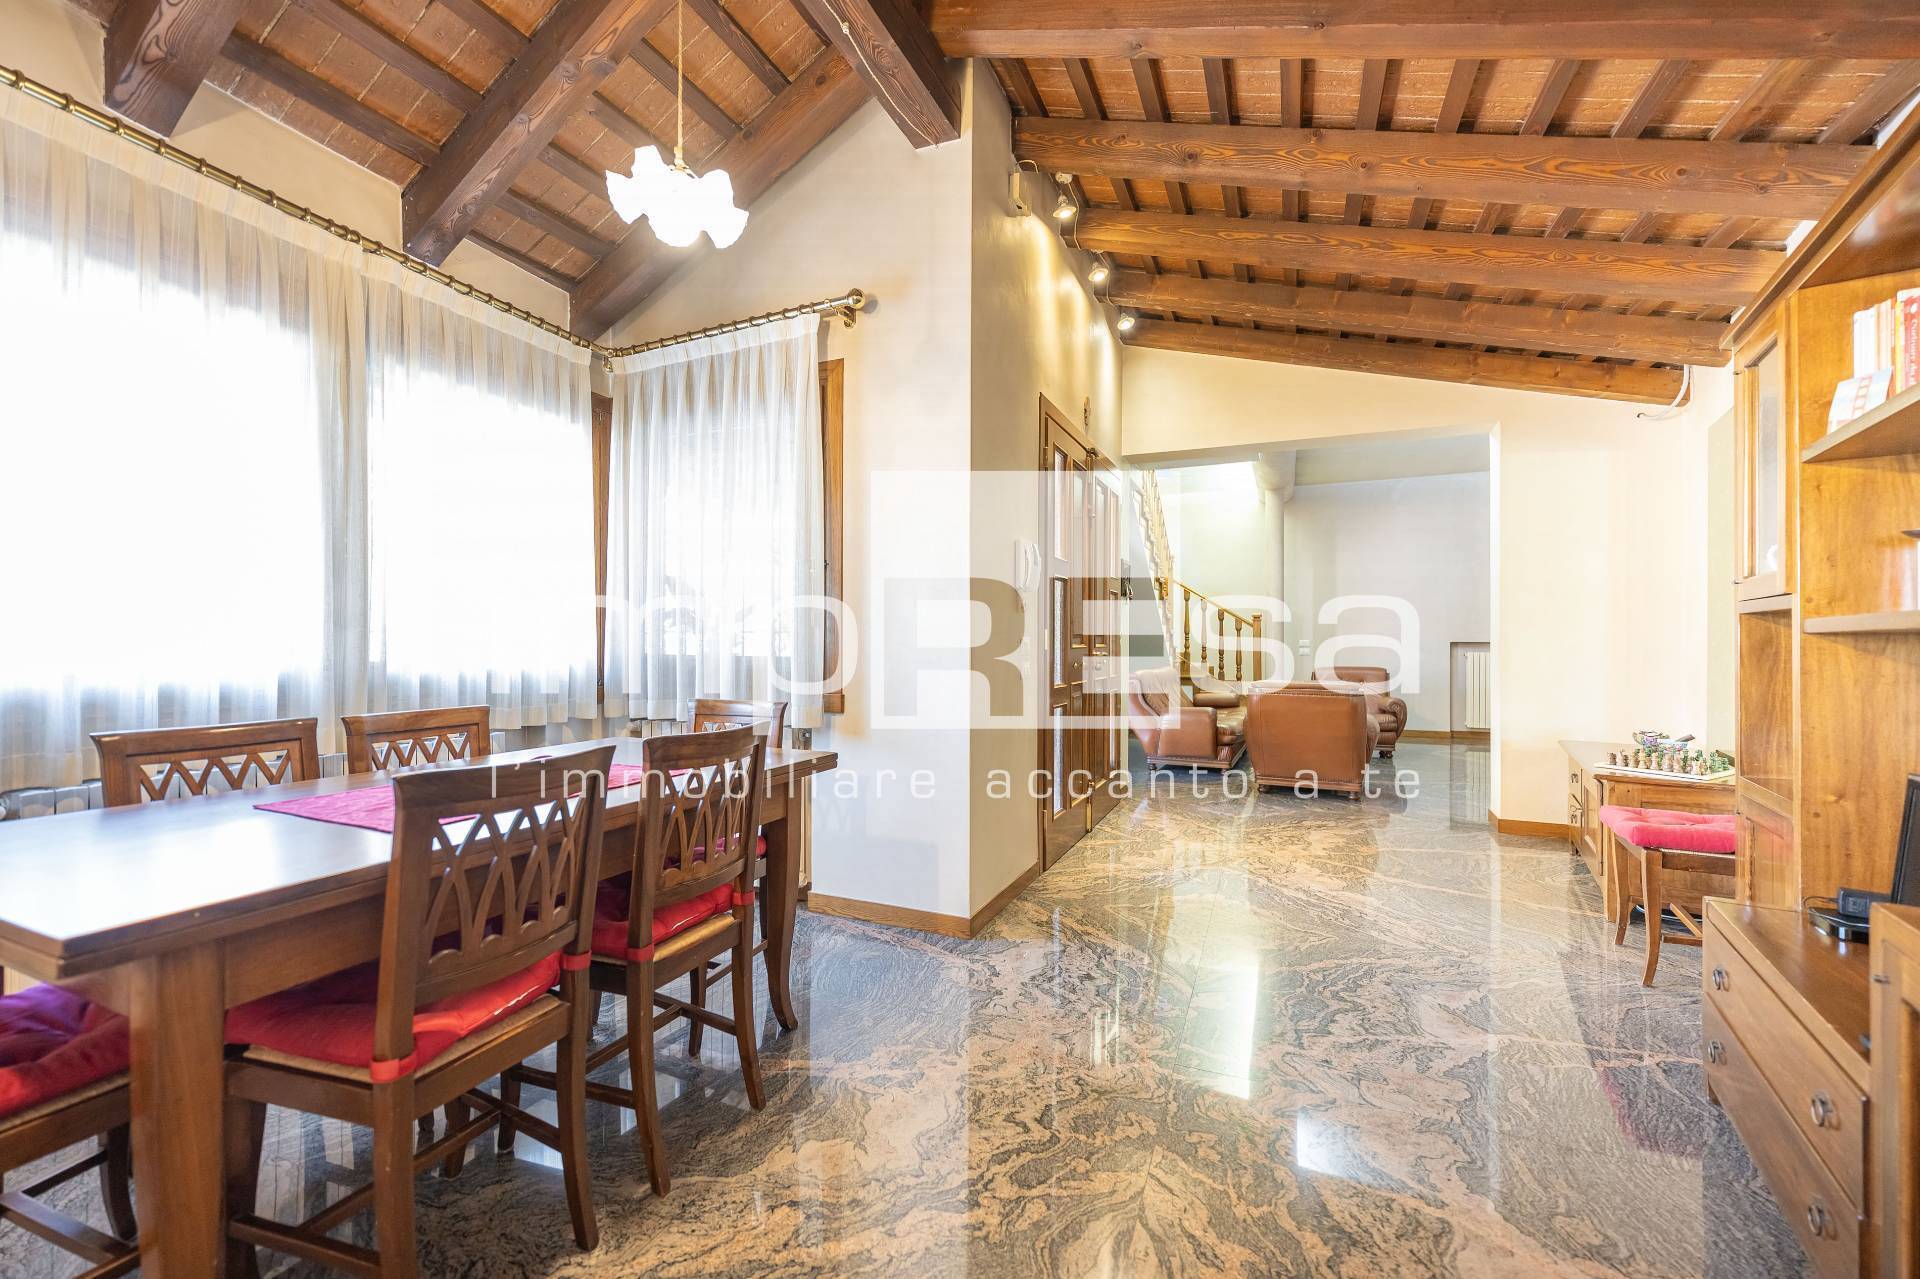 Villa Bifamiliare in vendita a Mira, 3 locali, prezzo € 245.000 | PortaleAgenzieImmobiliari.it